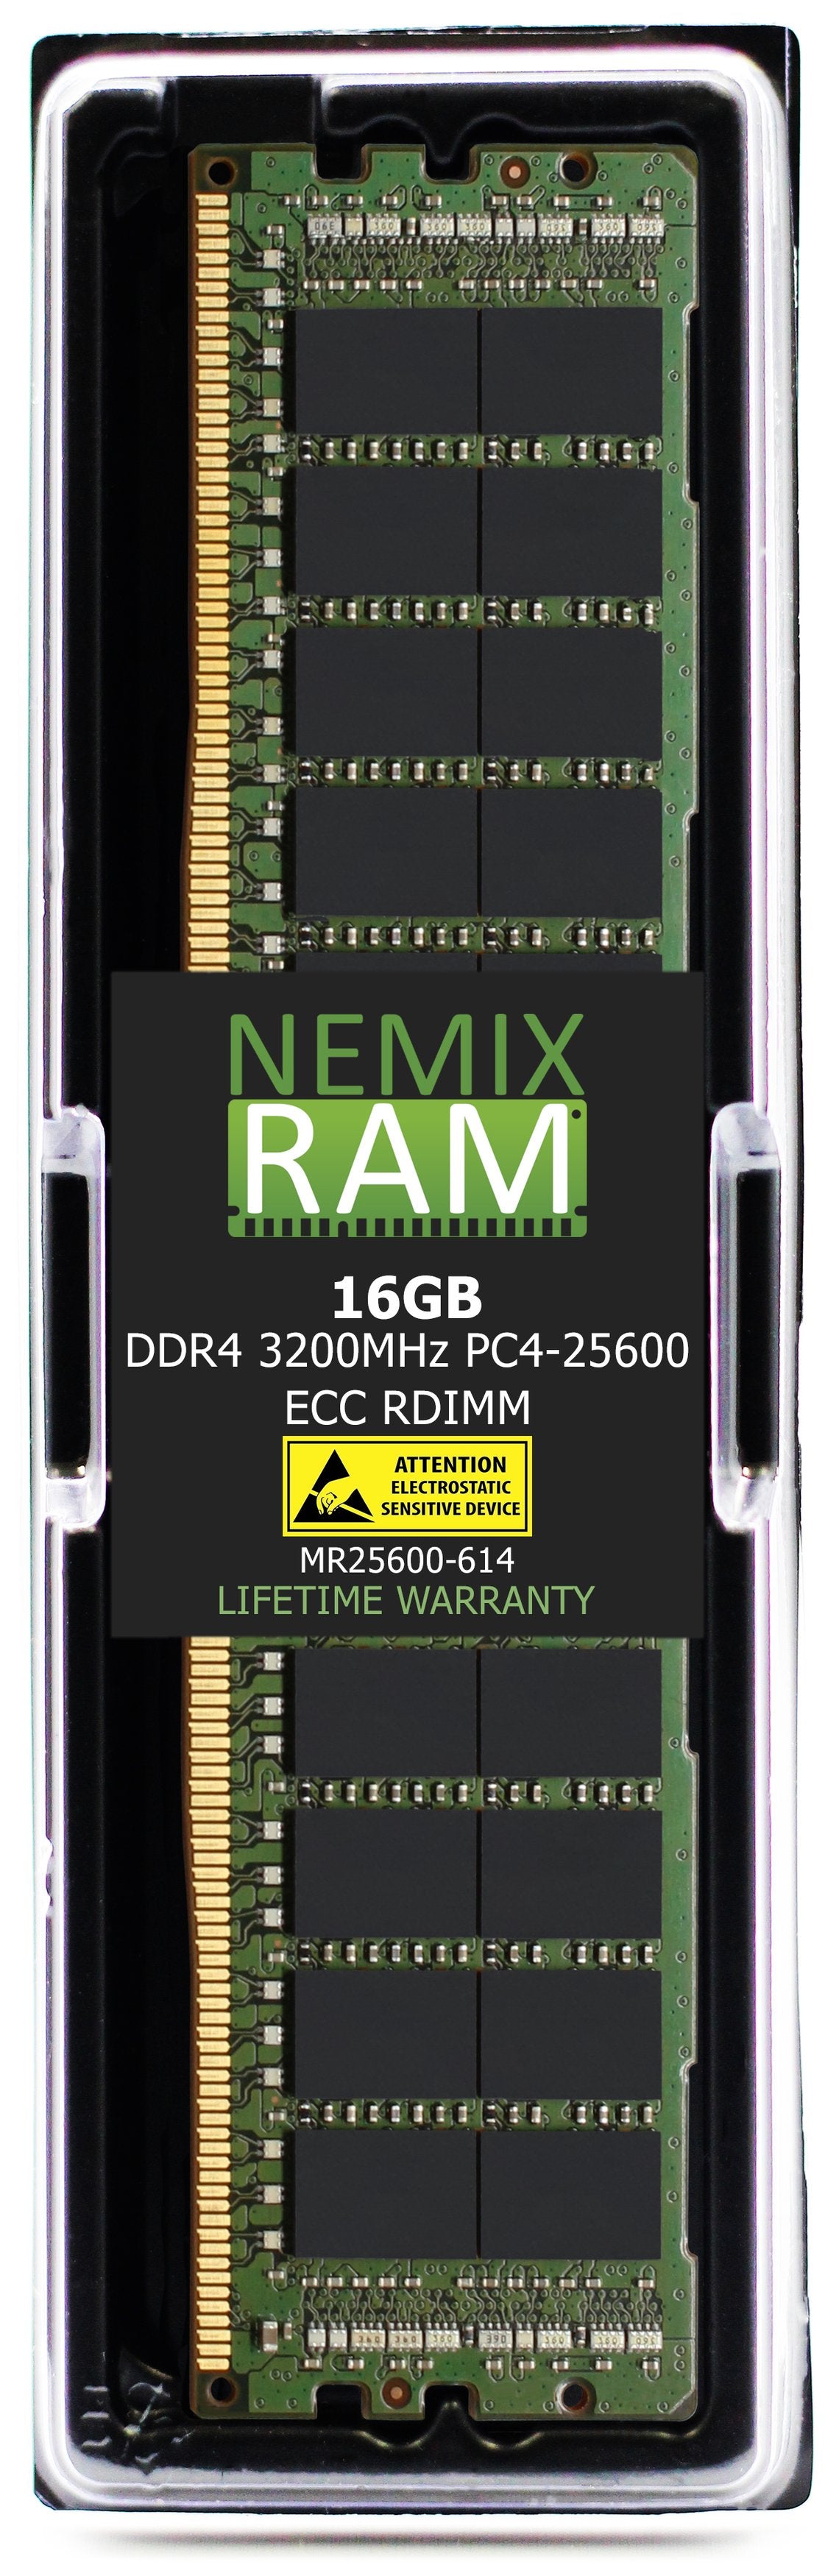 Hynix HMA82GR7DJR4N-XN 16GB DDR4 3200MHZ PC4-25600 RDIMM Compatible Memory Module